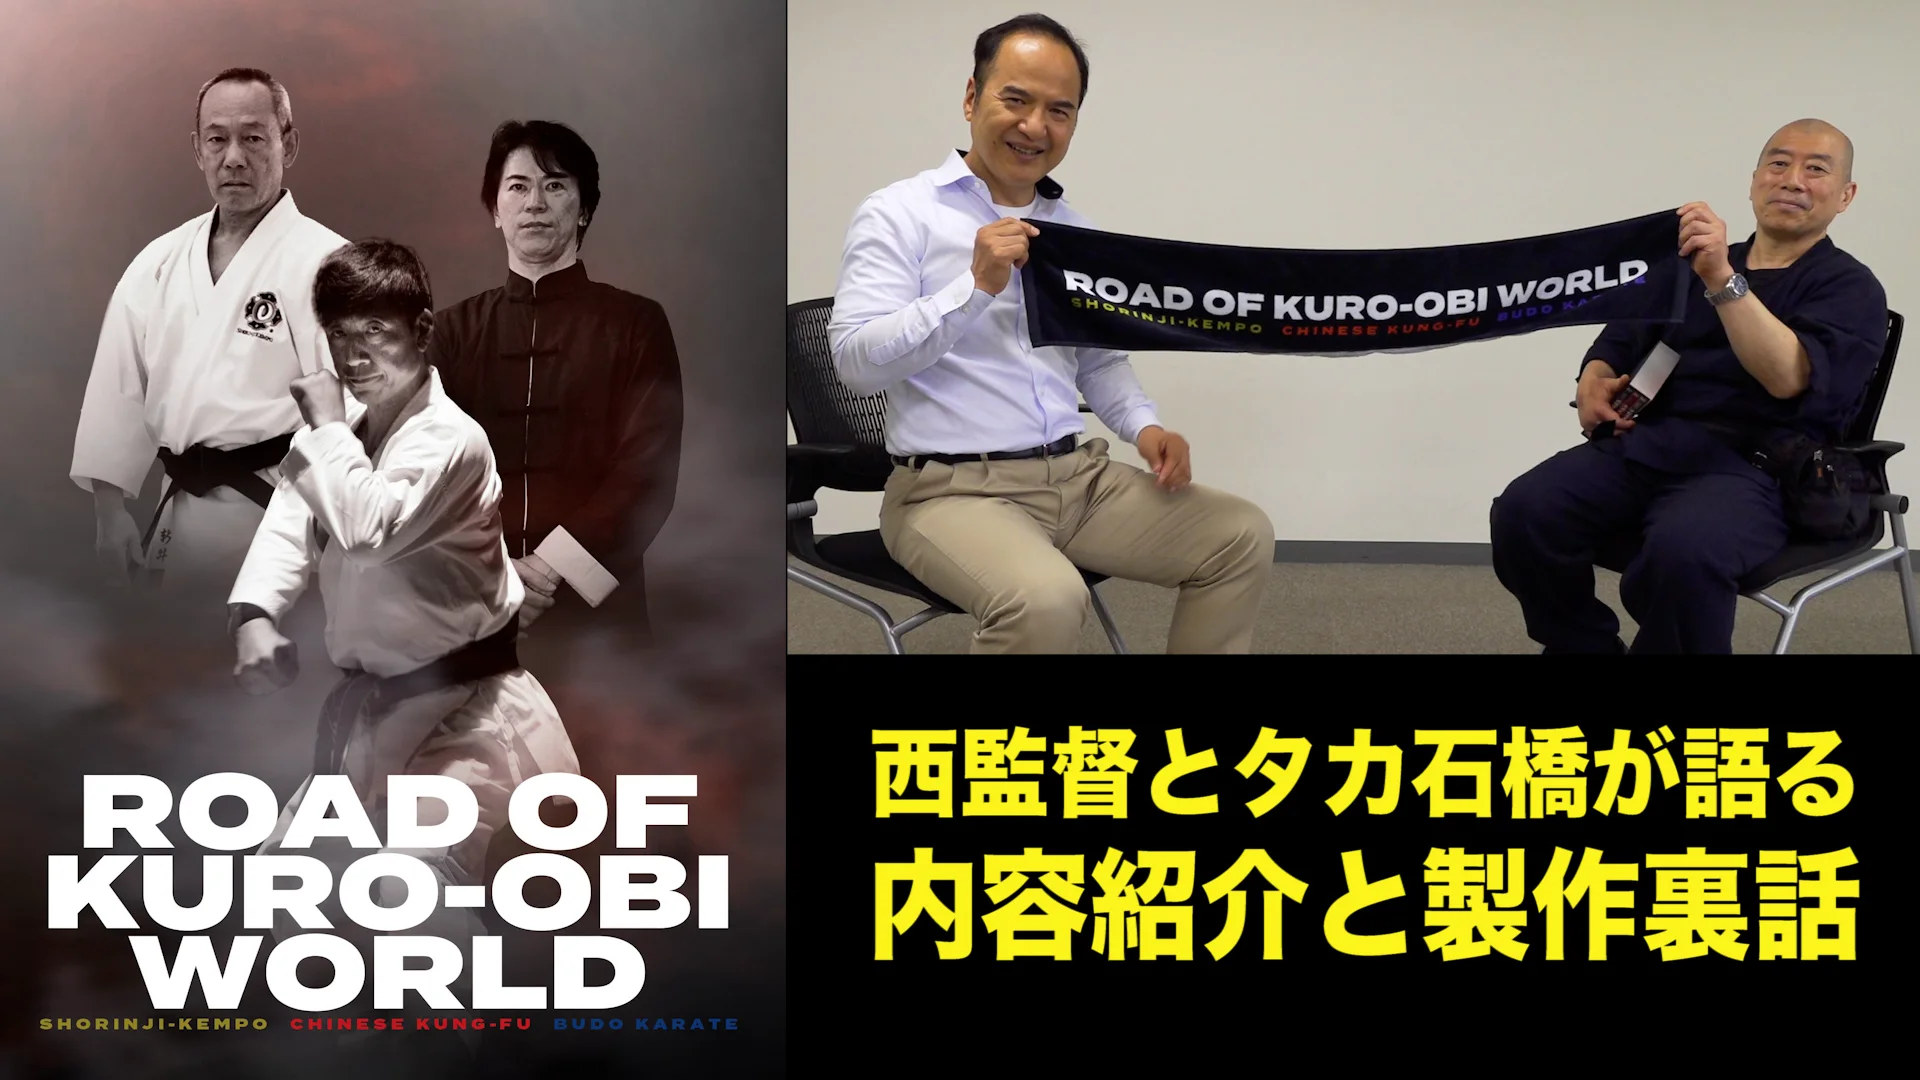 ROAD OF KURO-OBI WORLD DVD